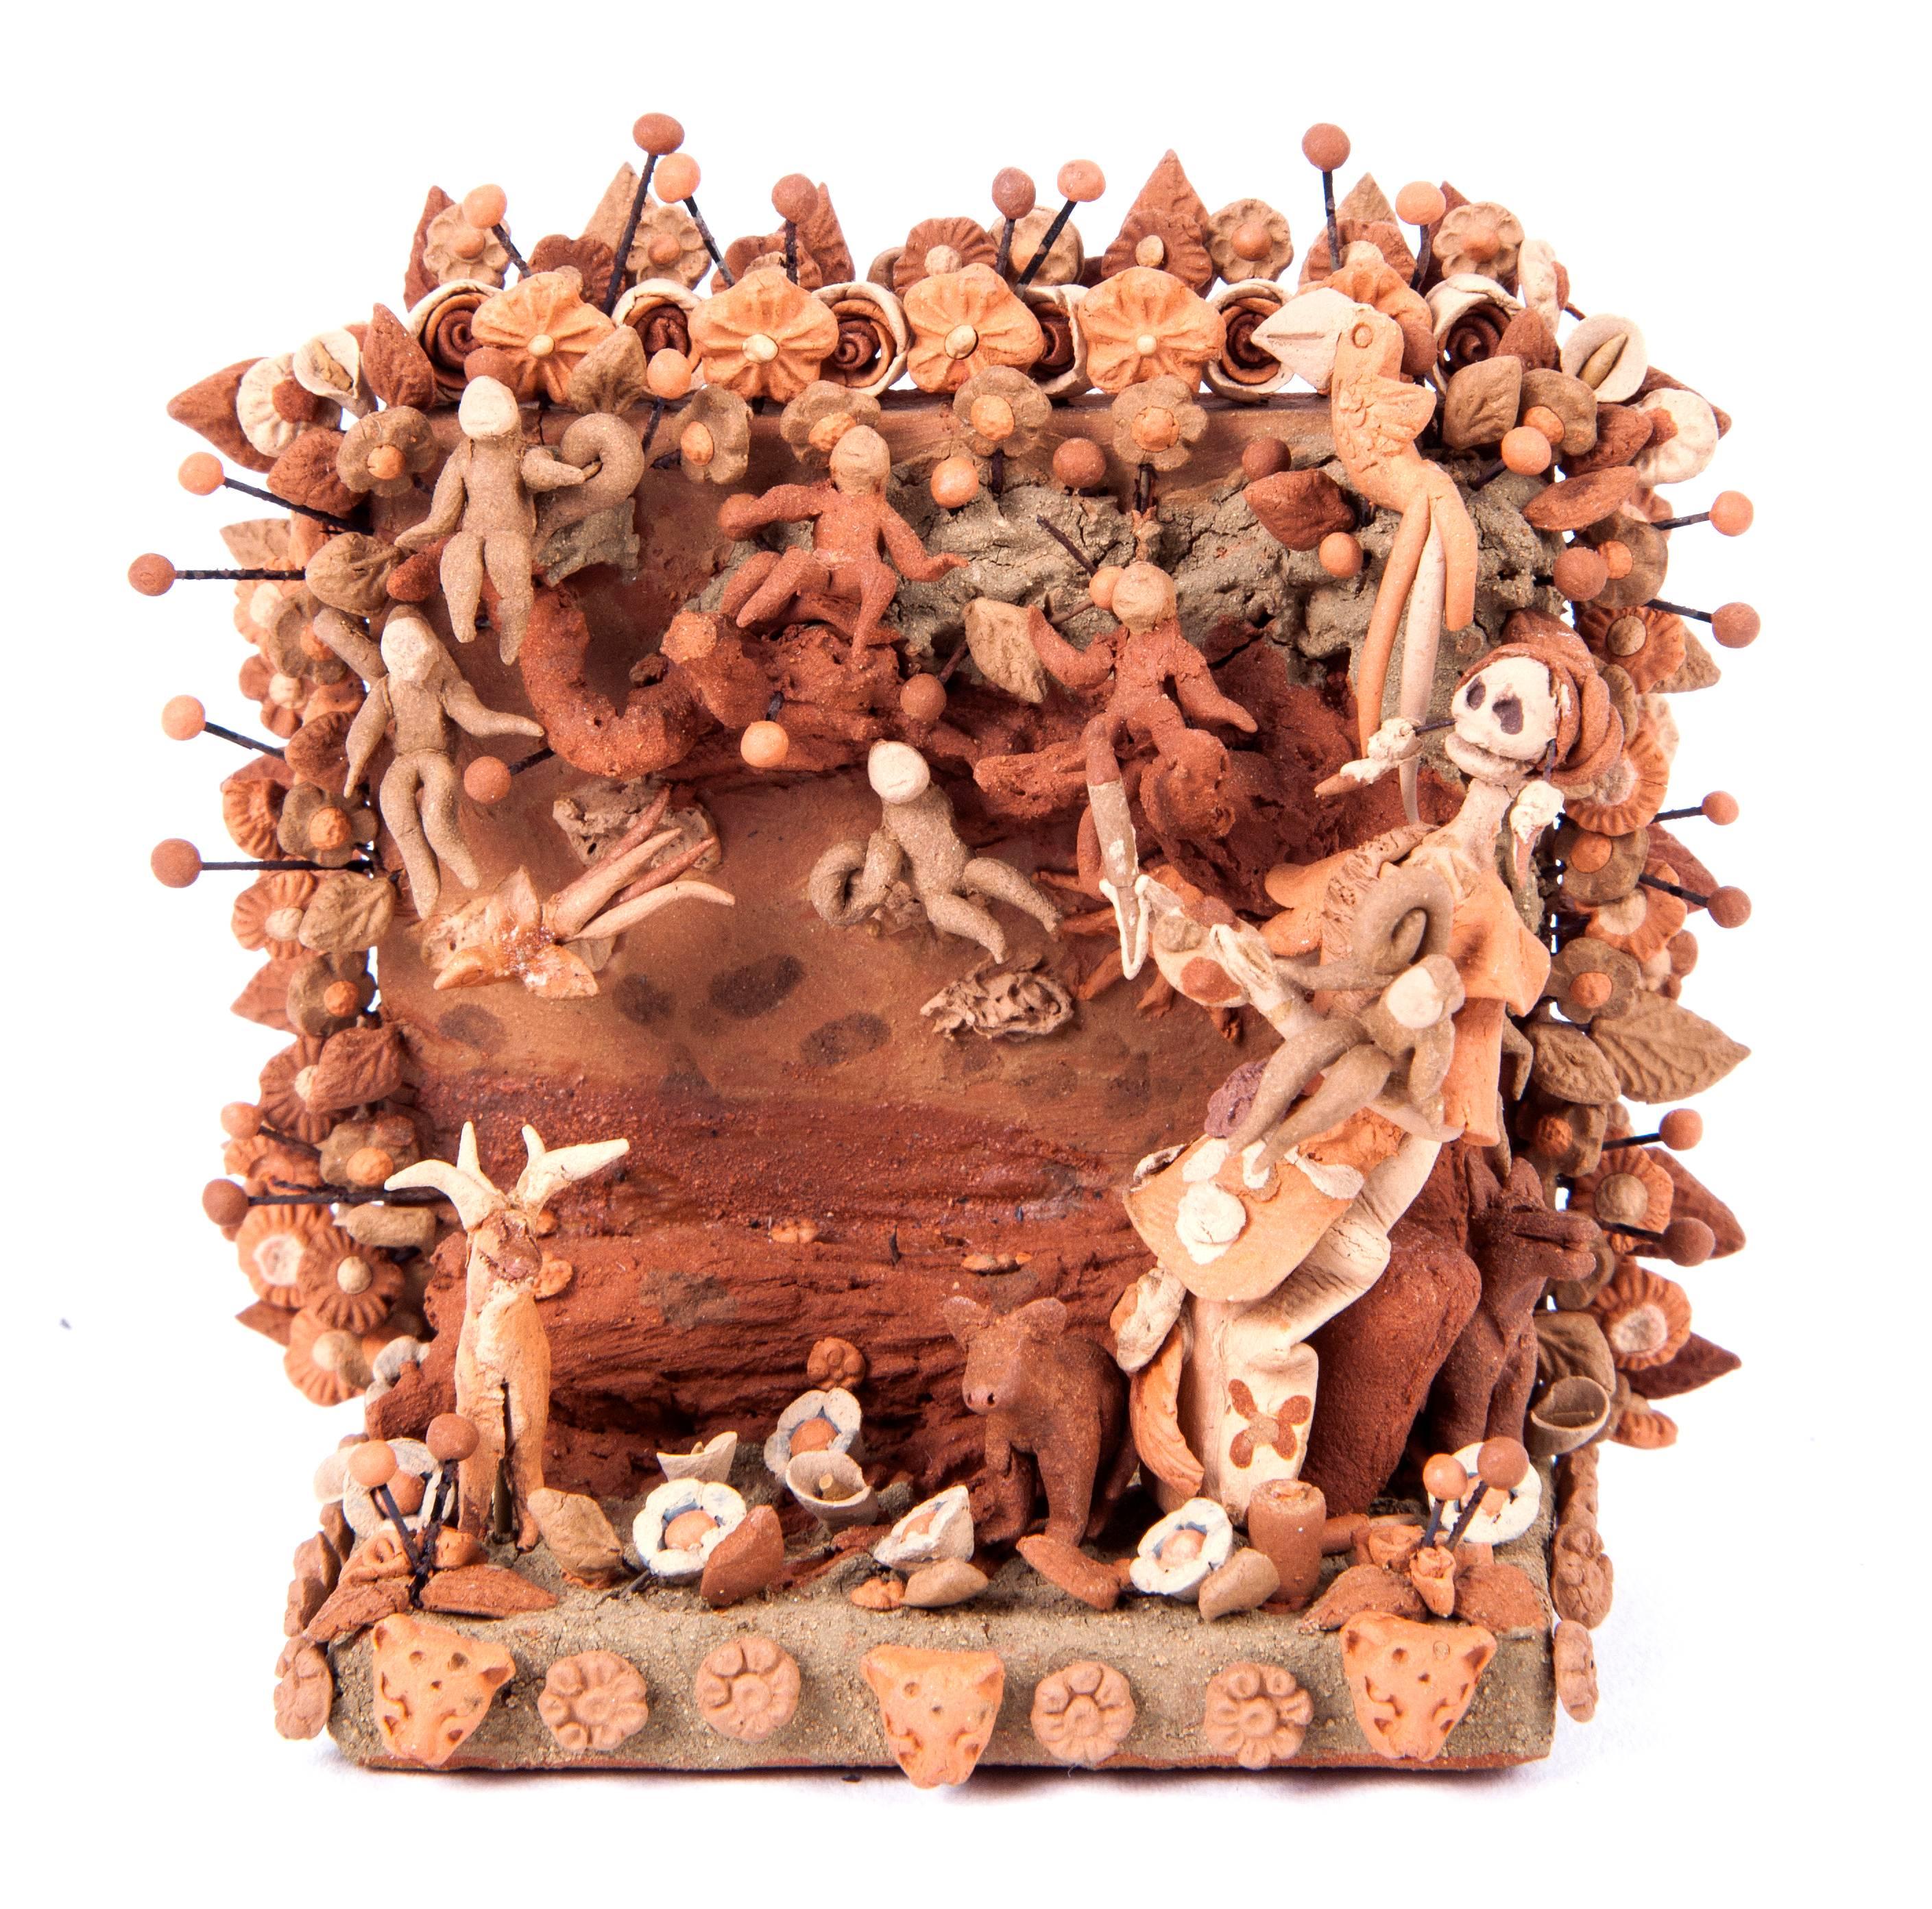 Altar de Muertos Frida Kahlo / Ceramics Mexican Folk Art Clay - Sculpture by Cecilio Sanchez Fierro